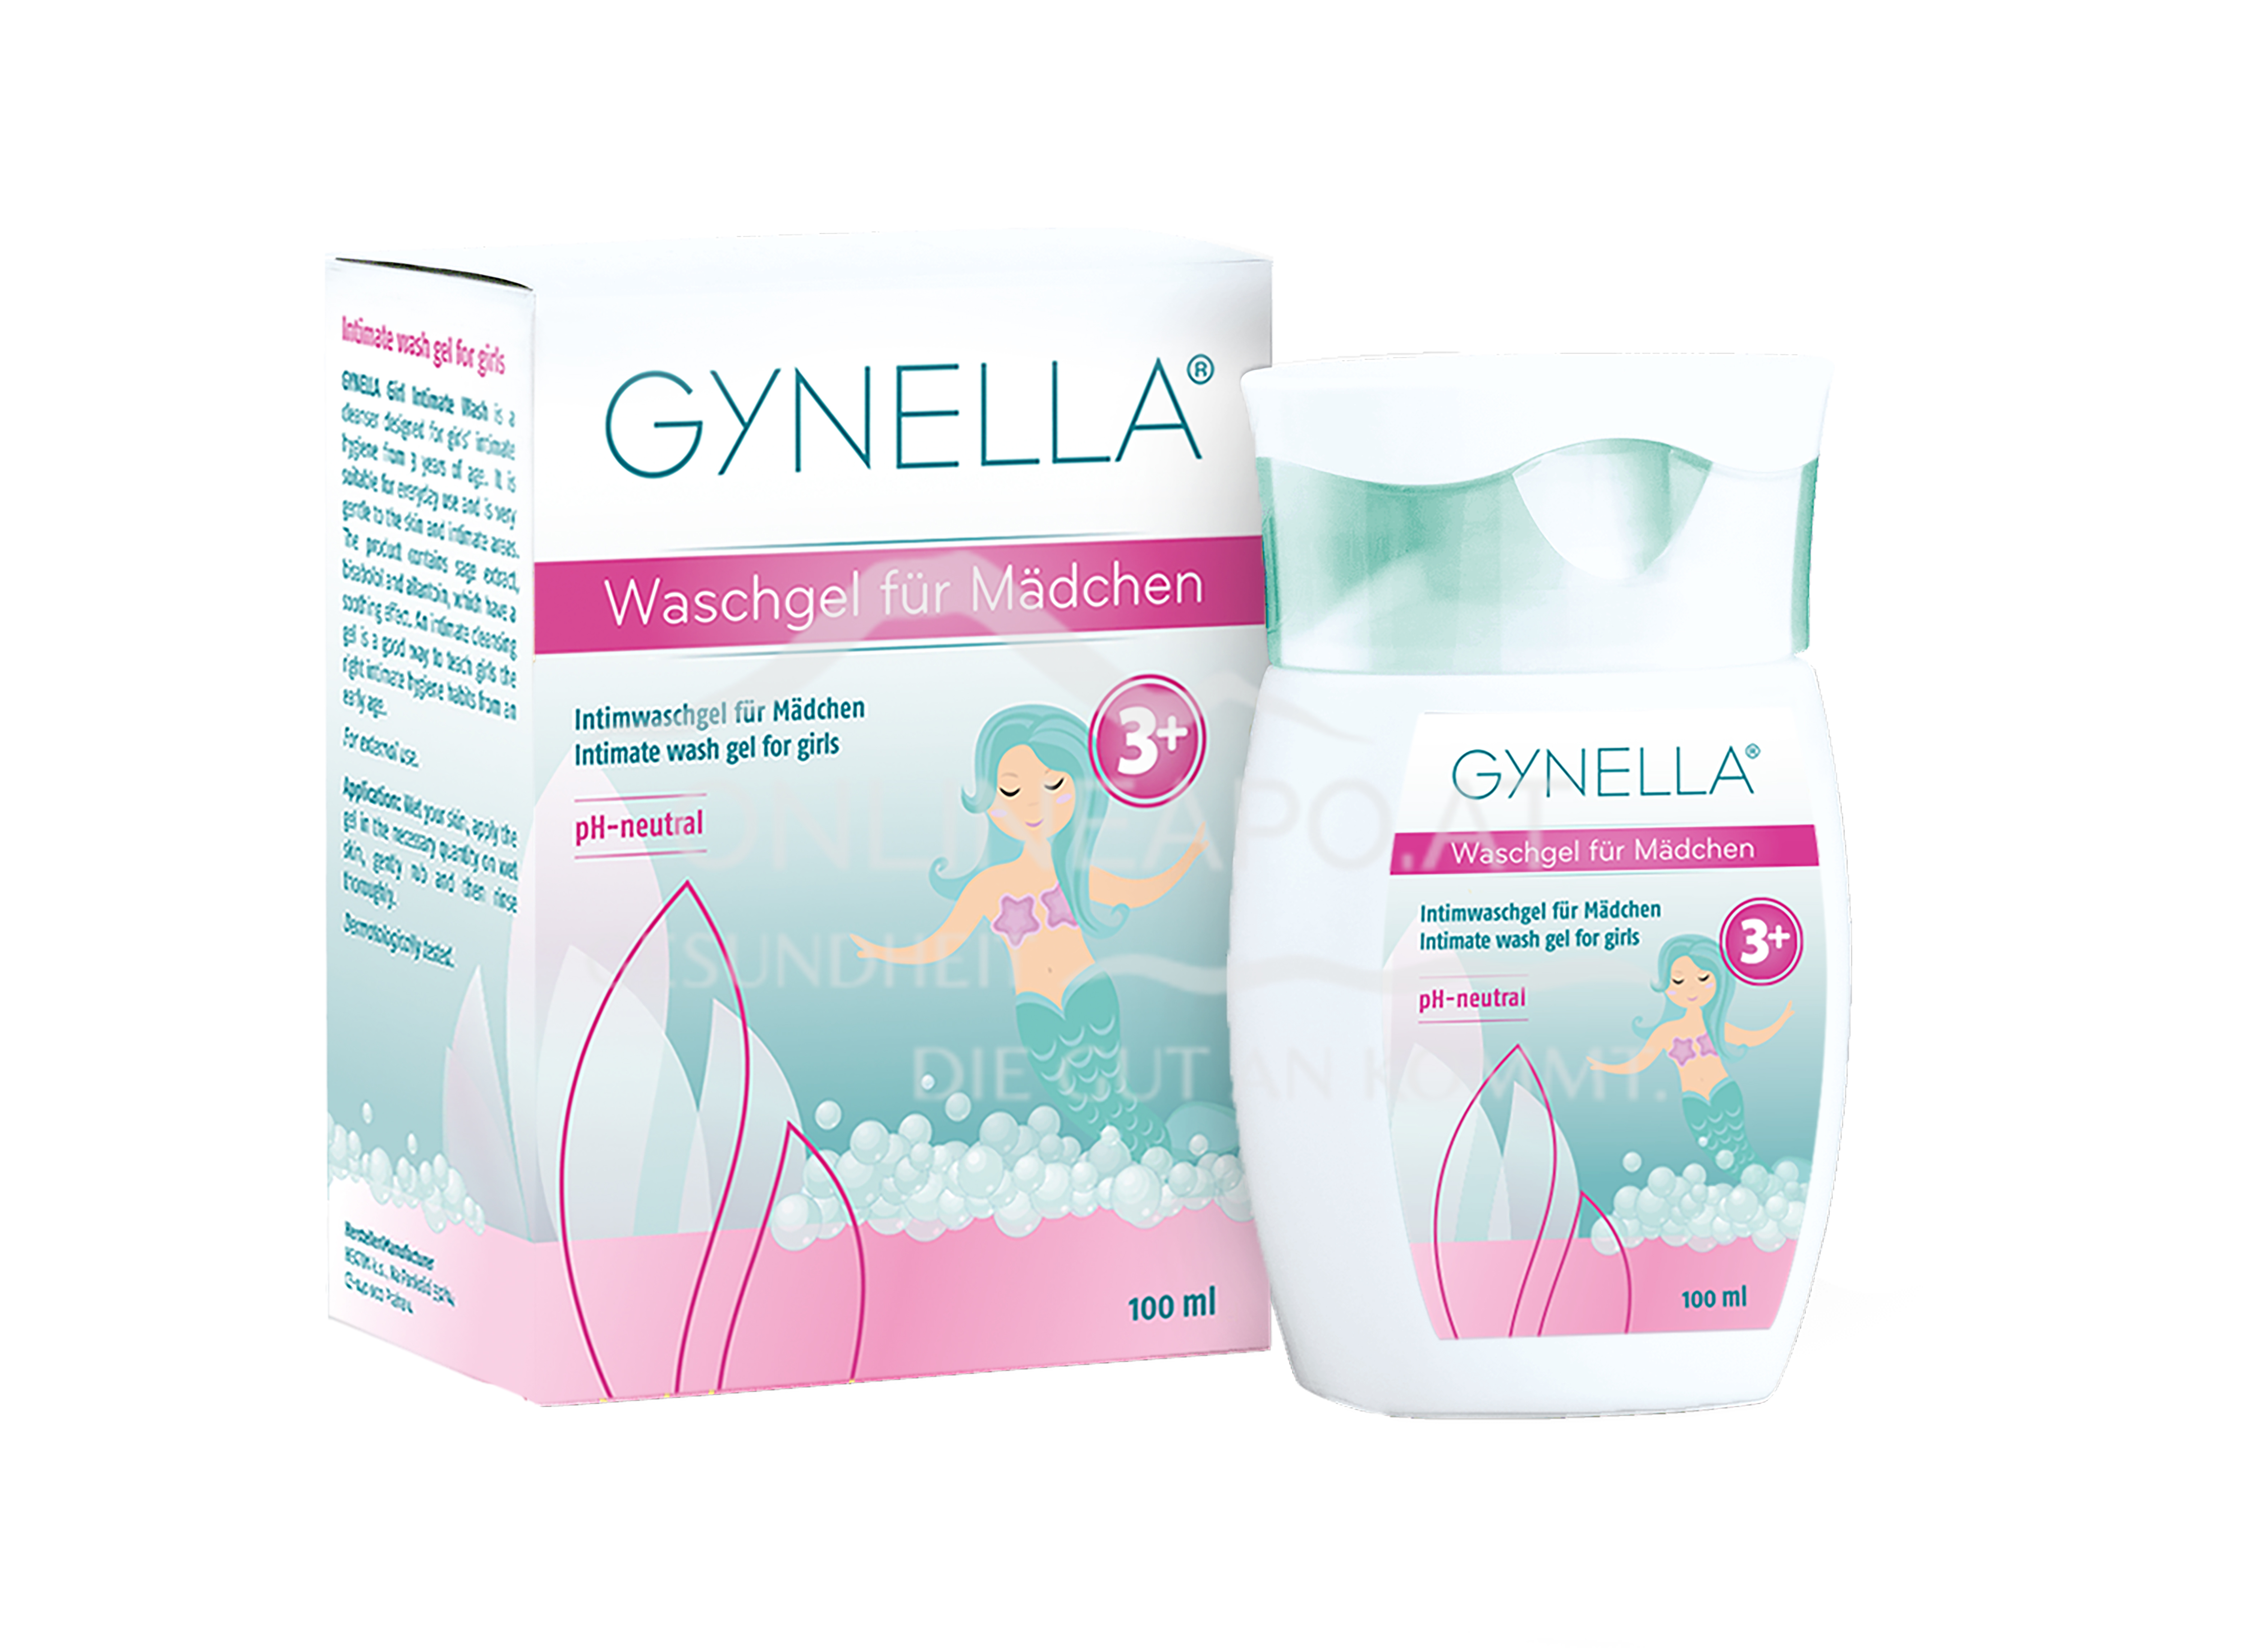 Gynella Waschgel für Mädchen